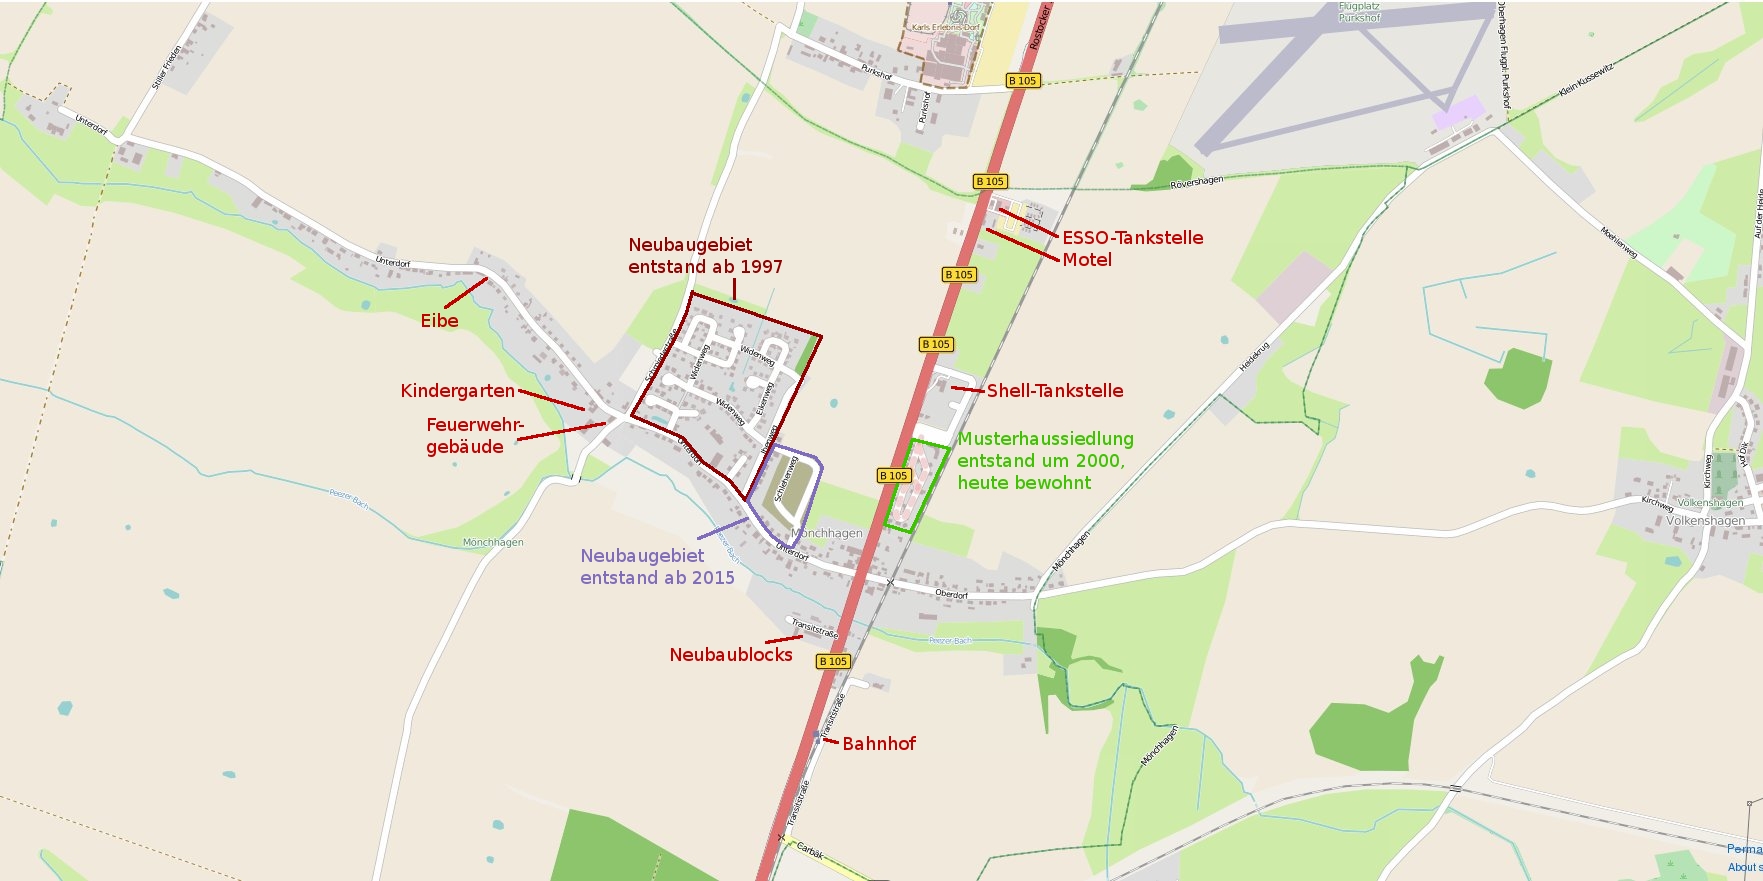 Karte des Ortes von 2015, aus dem OpenSource-Kartenprojekt openstreetmap